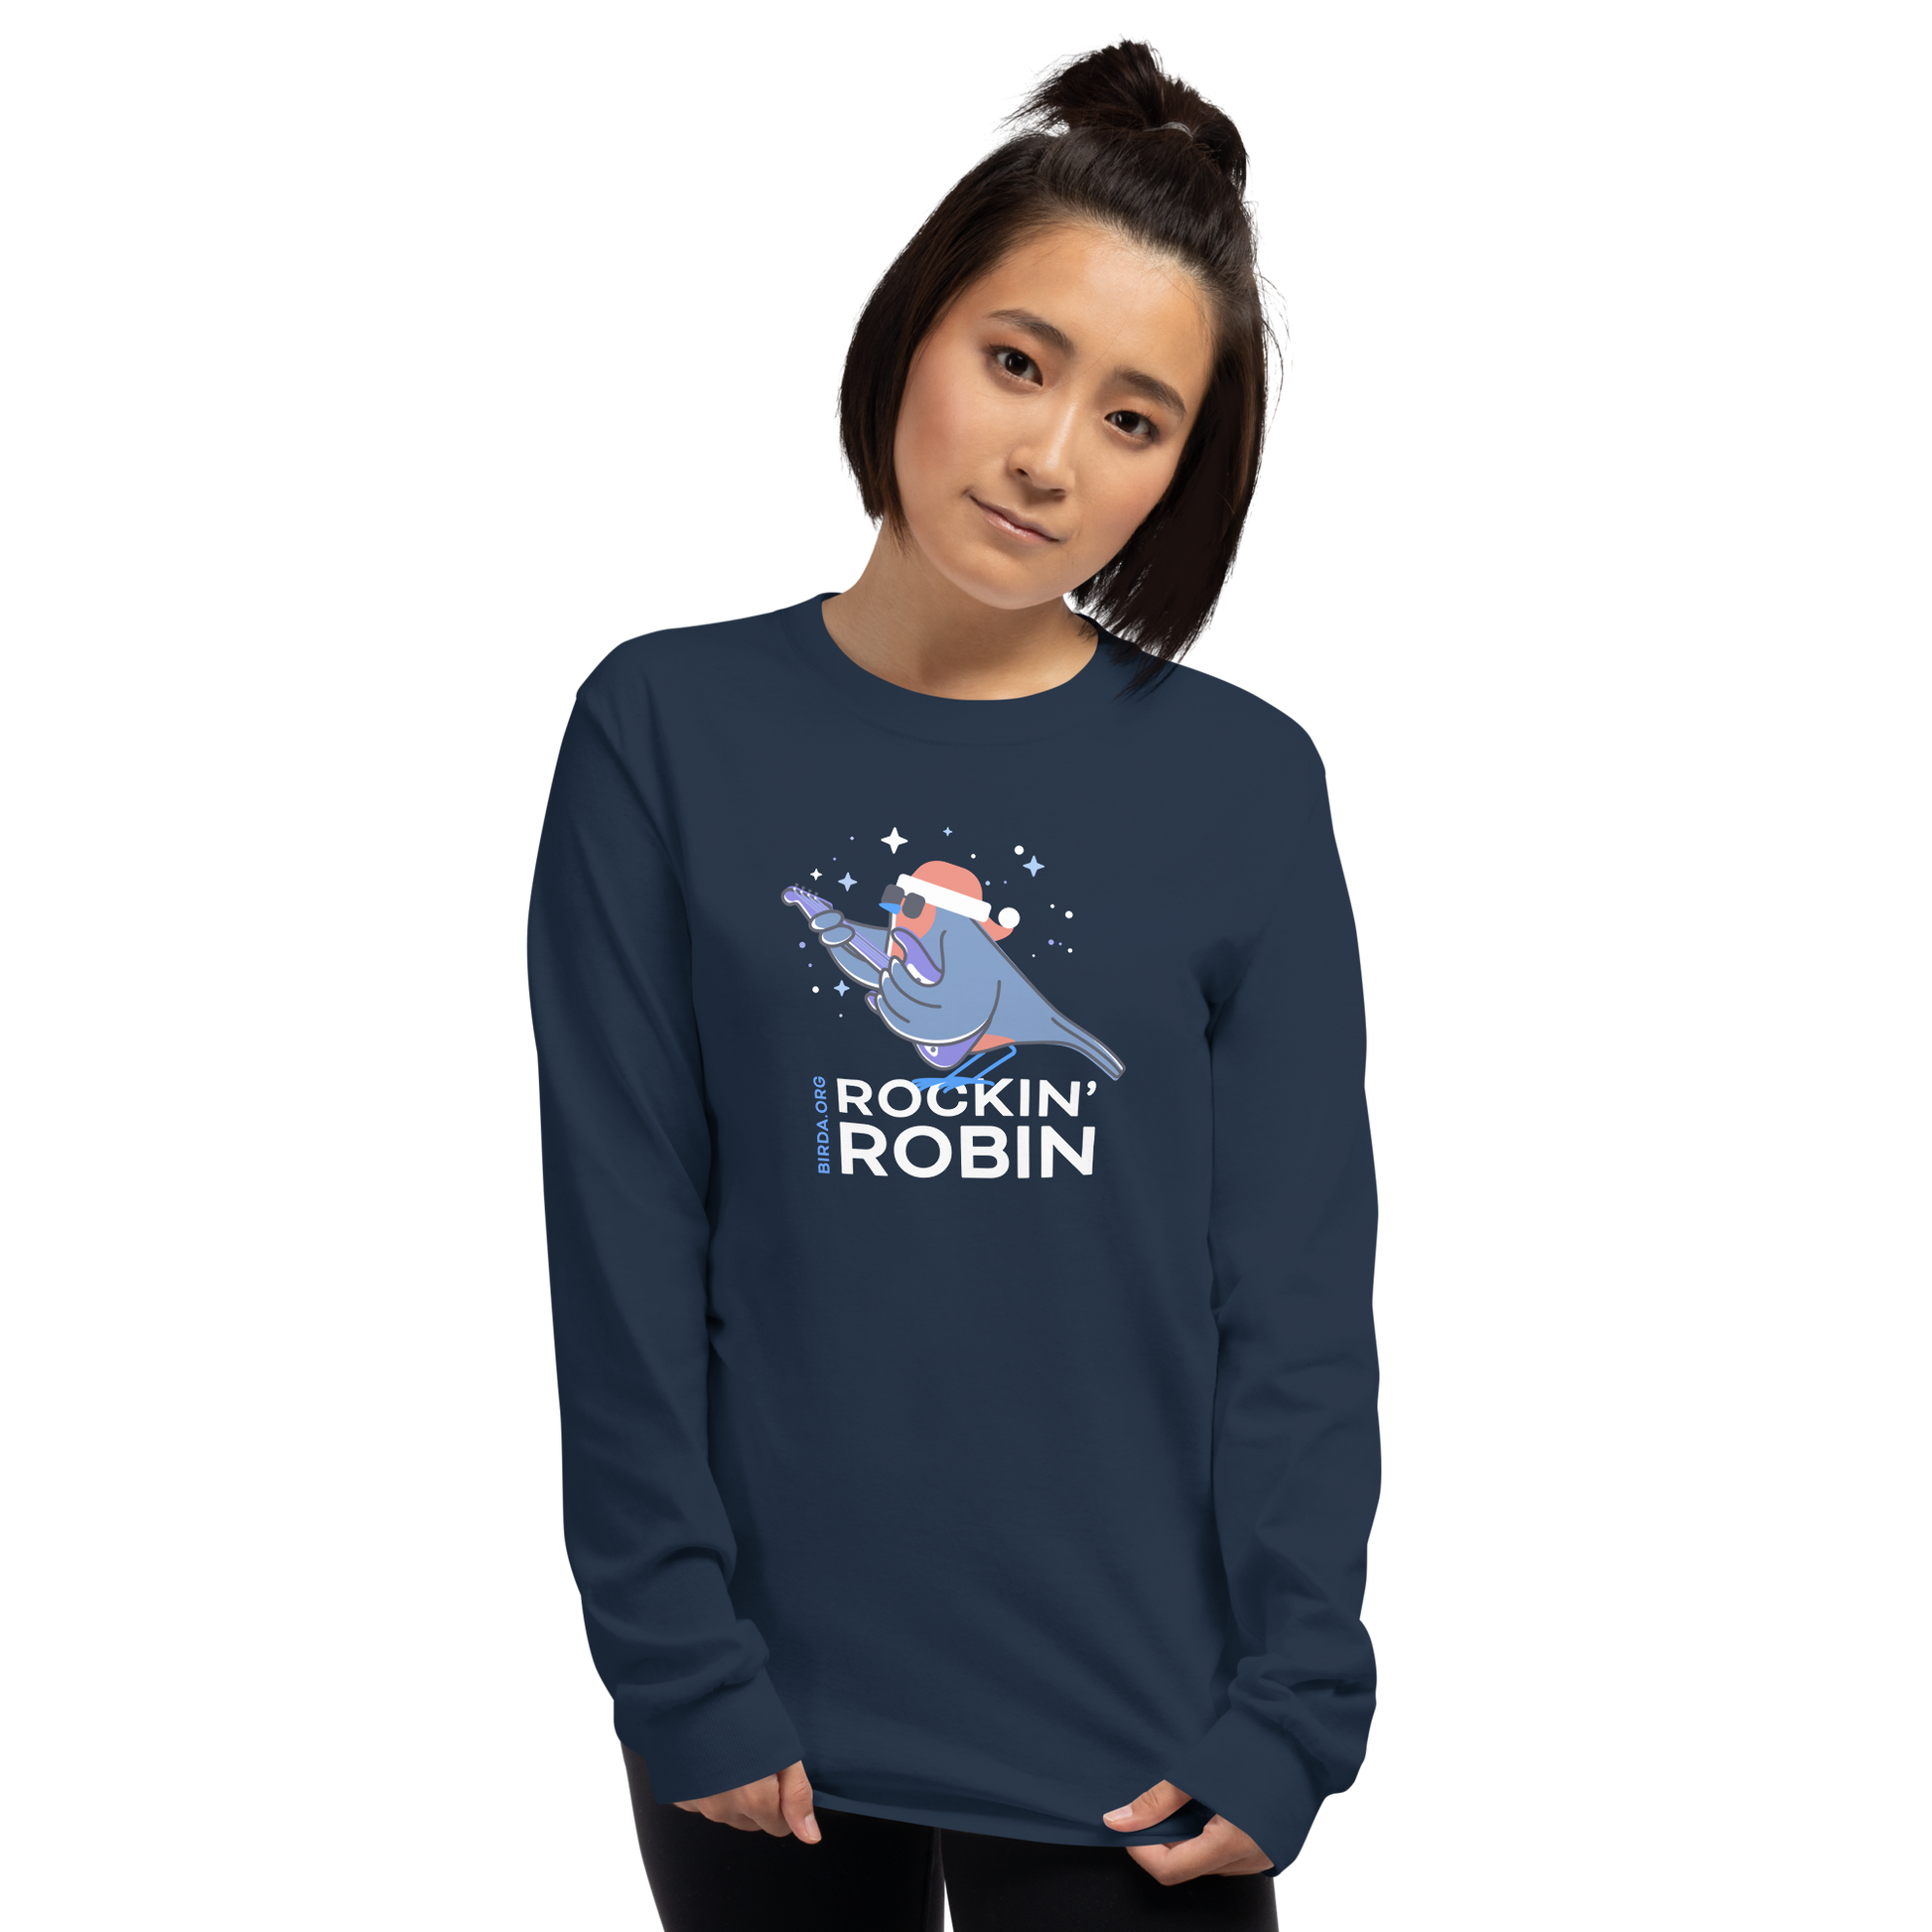 Rockin Robin Long-Sleeve Shirt on girl